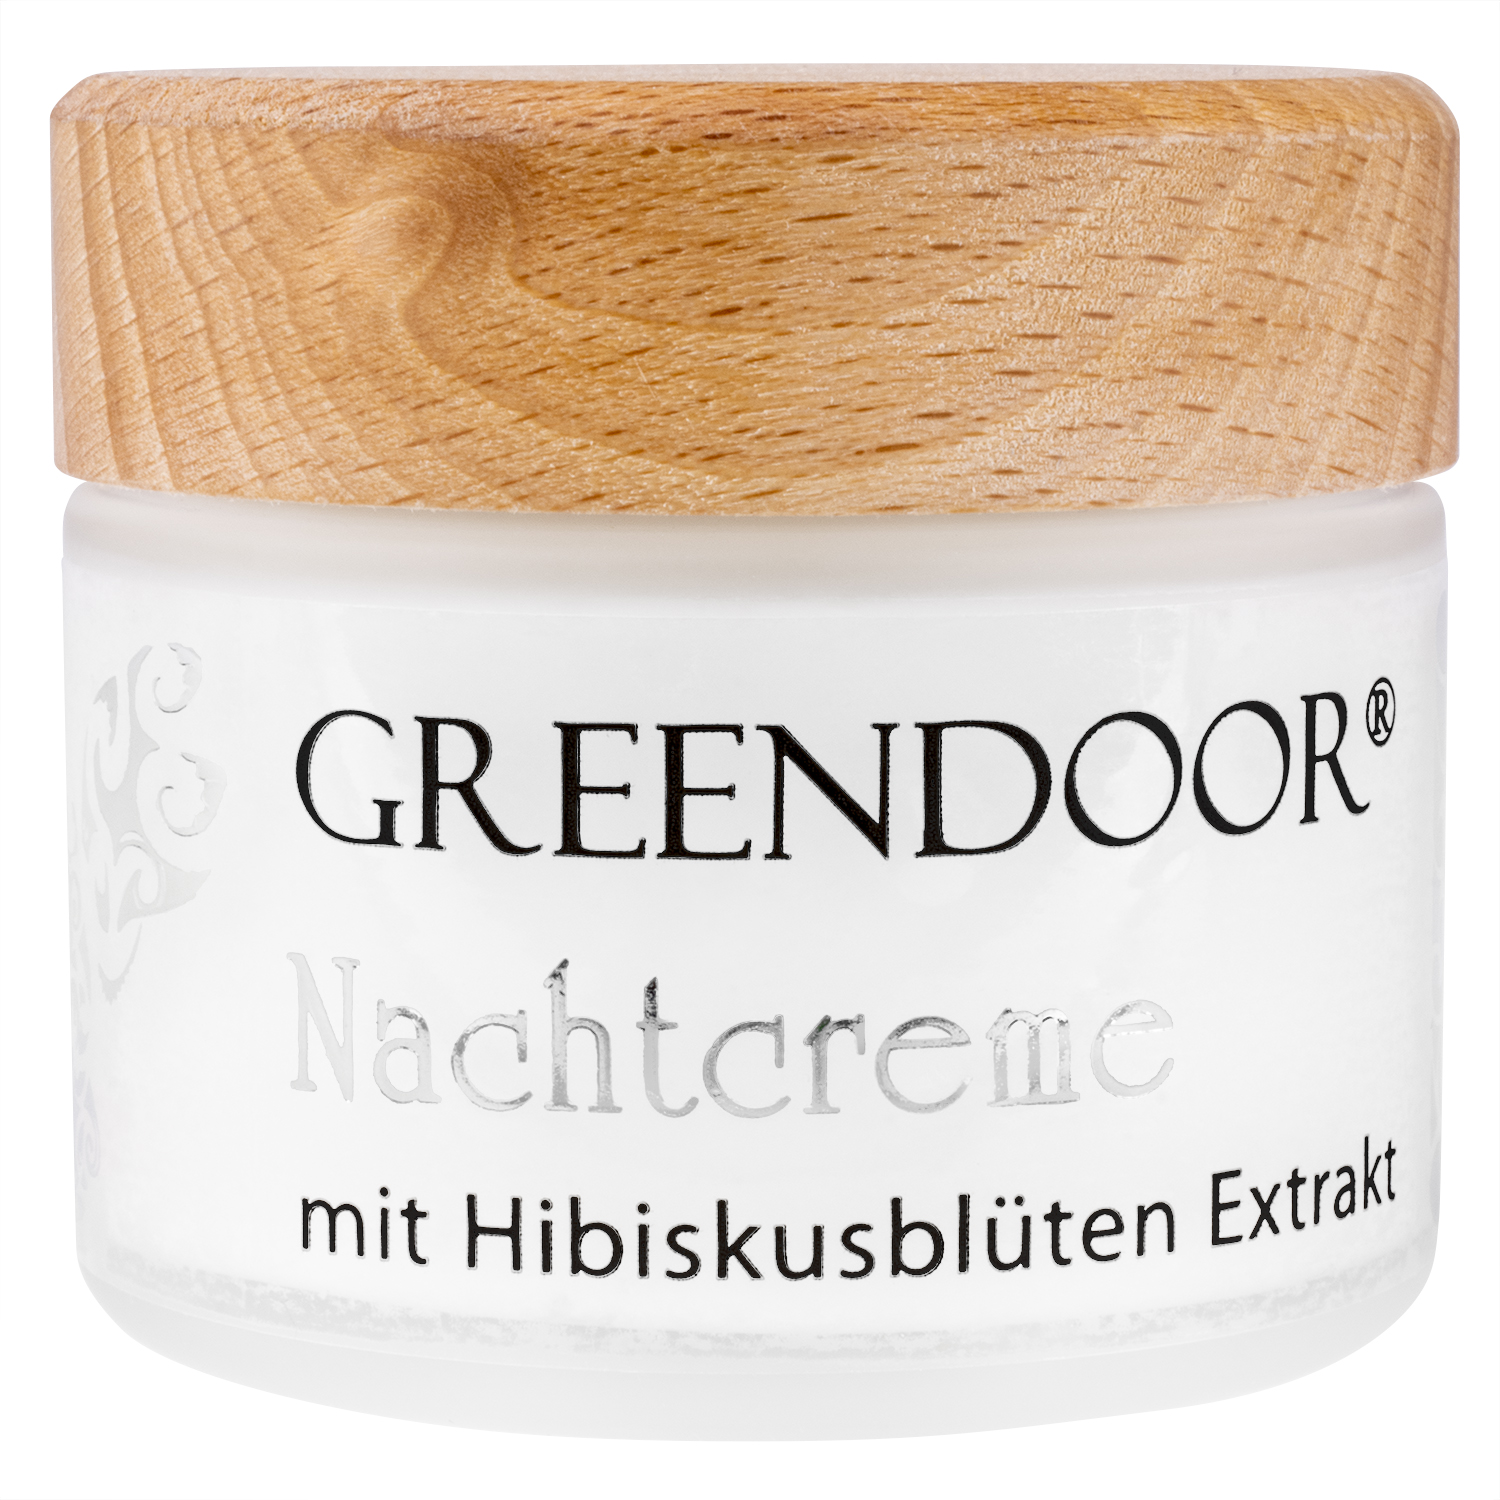 Nachtcreme mit Bio Hibiskusblüten Extrakt 50ml, natürliche Gesichtspflege, regeneriert,